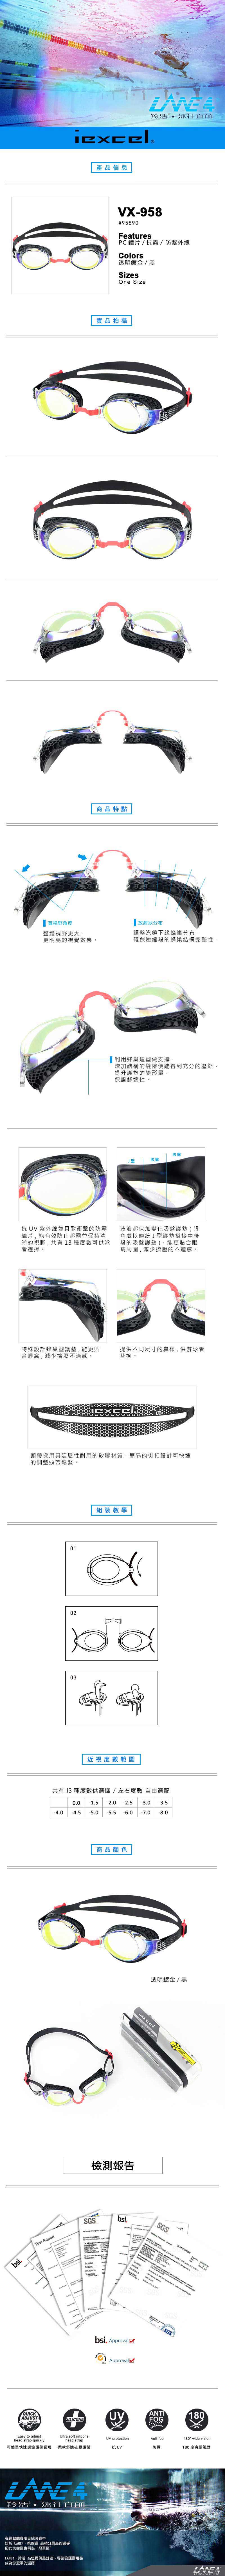 iexcel 專業光學度數泳鏡 專利蜂巢護墊 成人款 VX-958